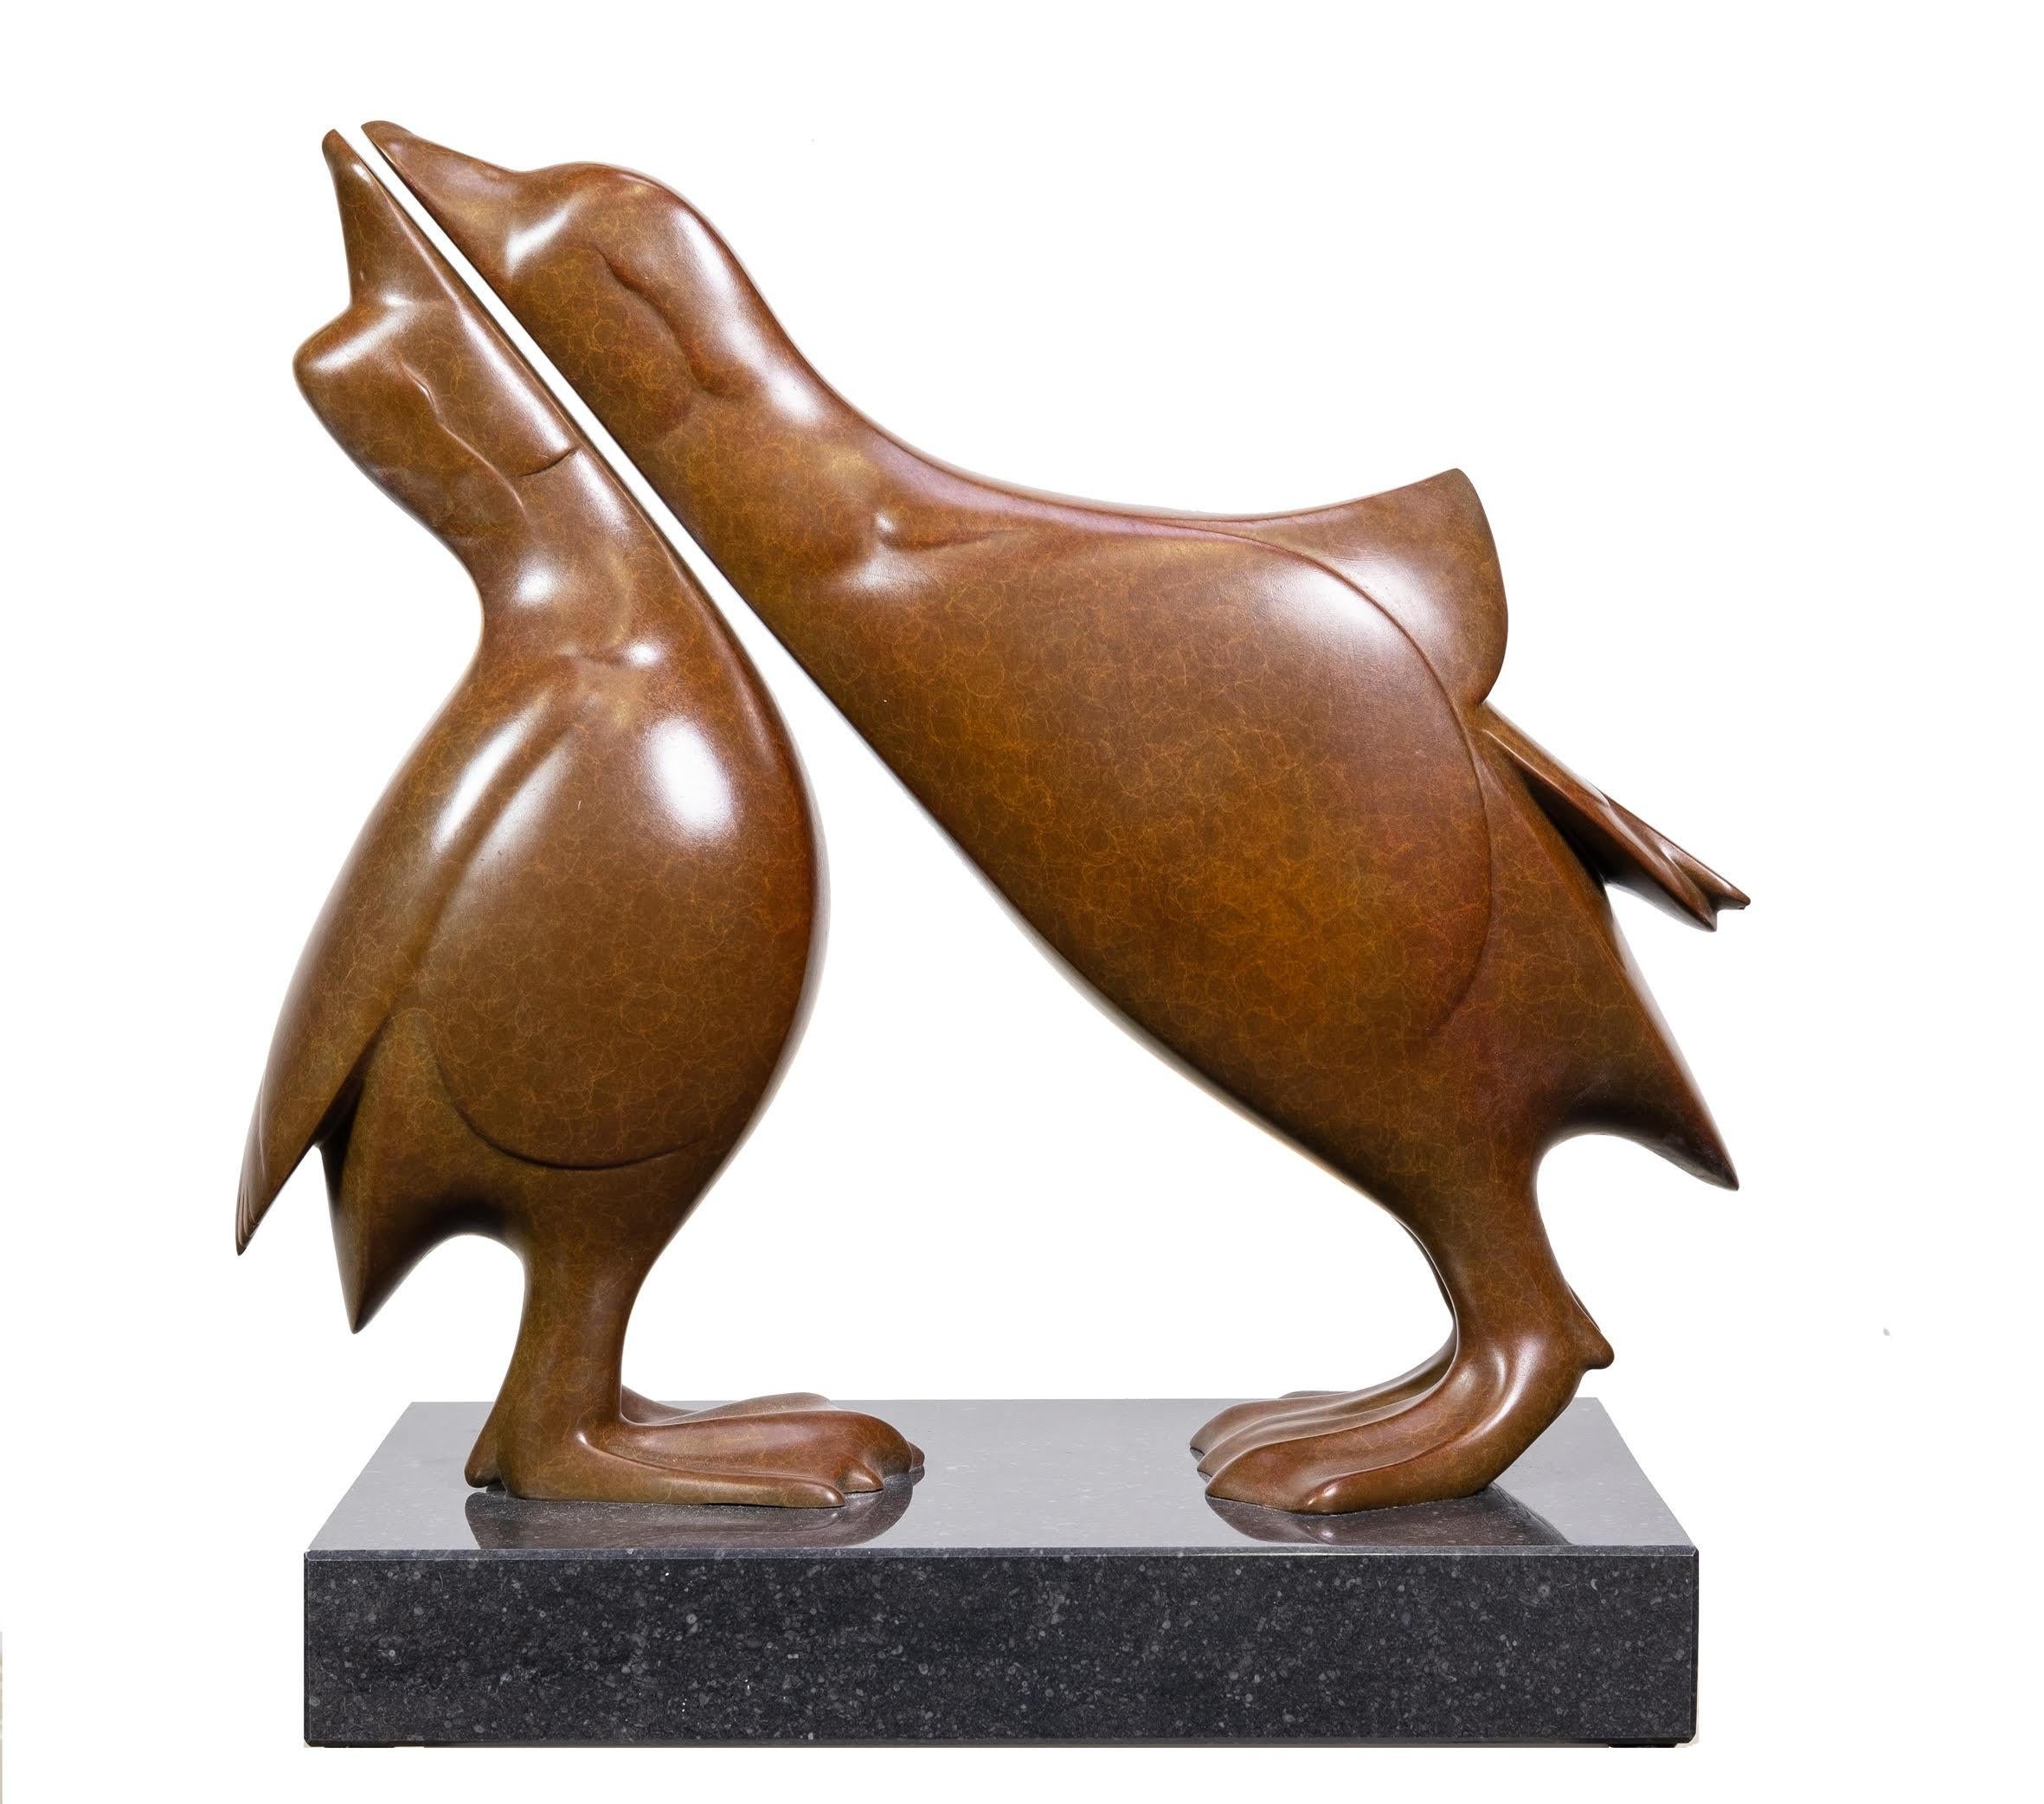 Figurative Sculpture Evert den Hartog - Twee Mandarijneenden n° 2 Sculpture contemporaine de deux canards mandarins en bronze